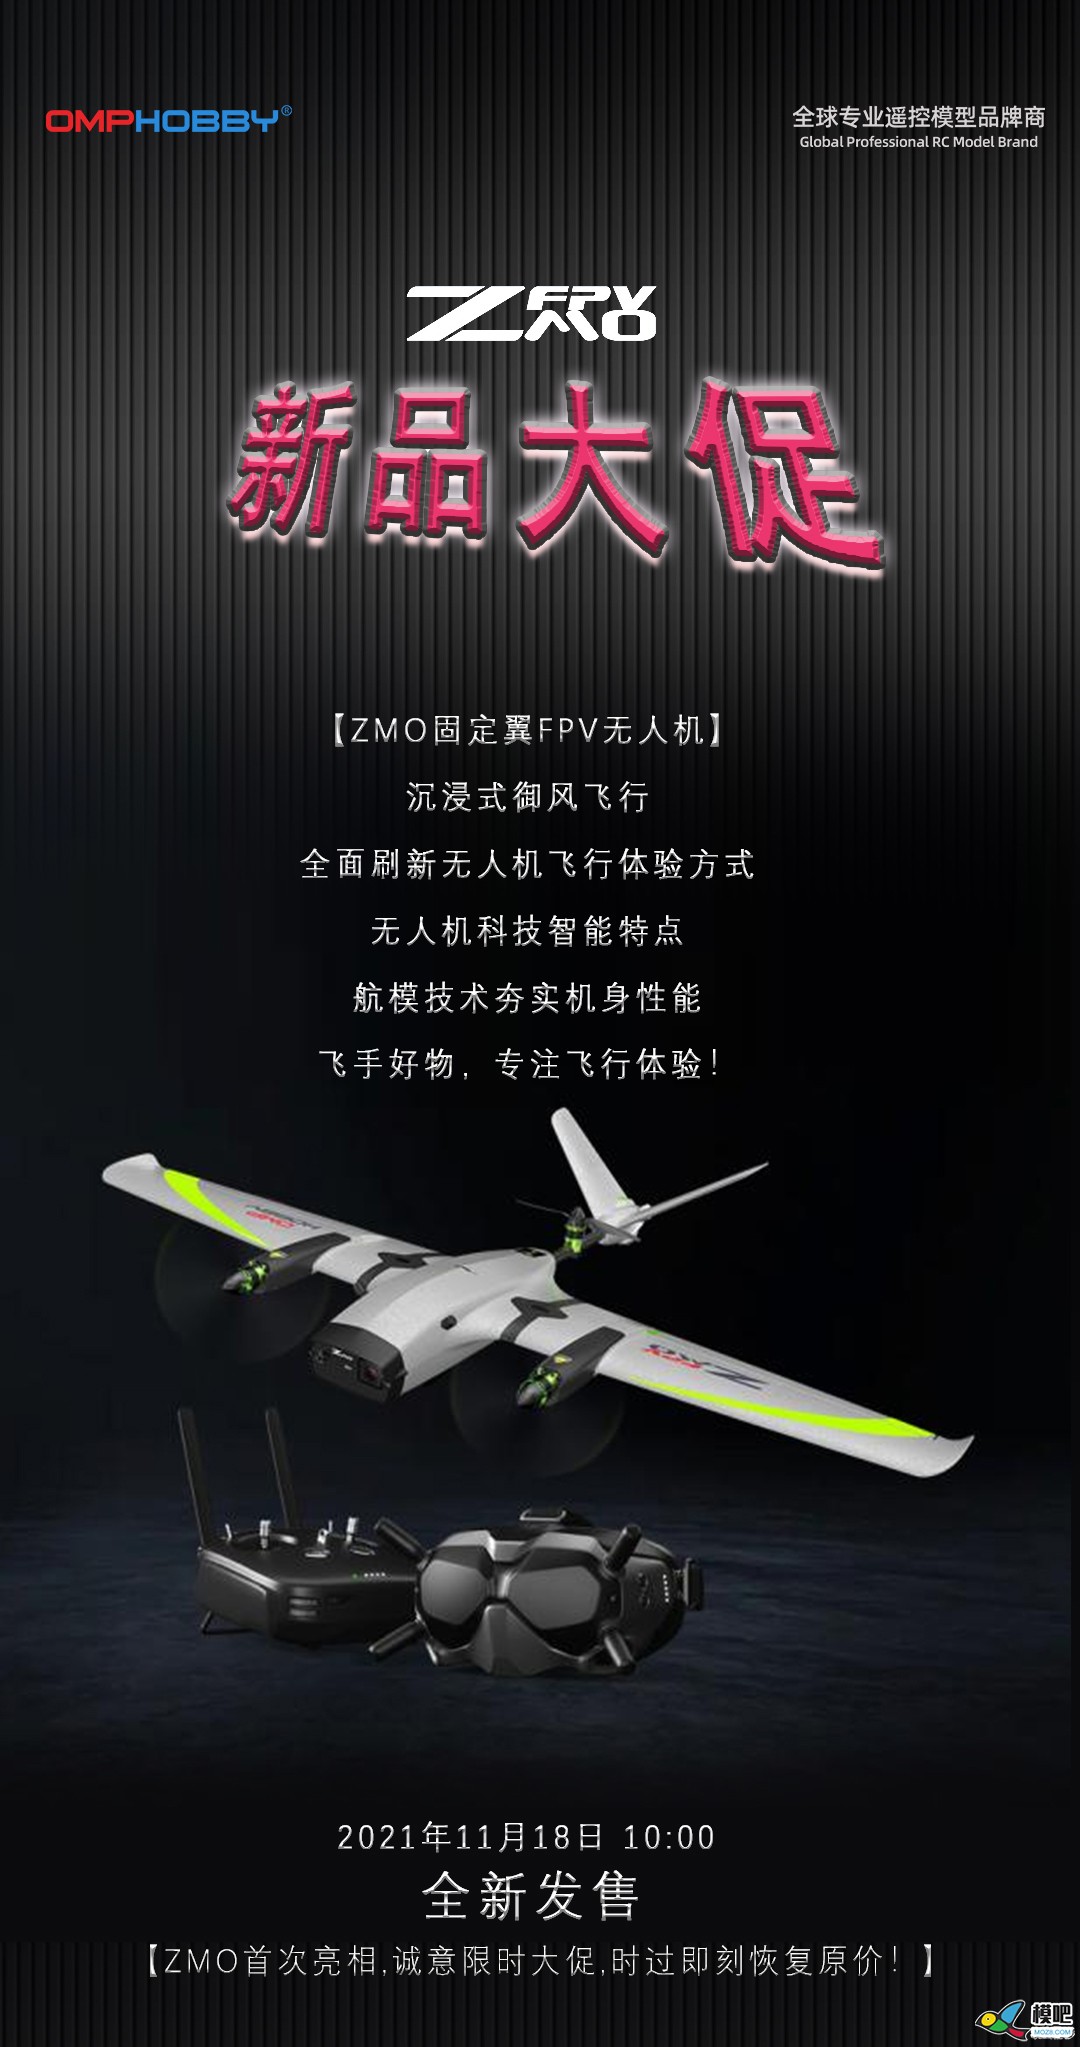 潮玩无人机-固定翼垂起FPV【zmo】| 全新发售 无人机,航模,固定翼,飞手,潮玩 作者:边锋领域 7613 